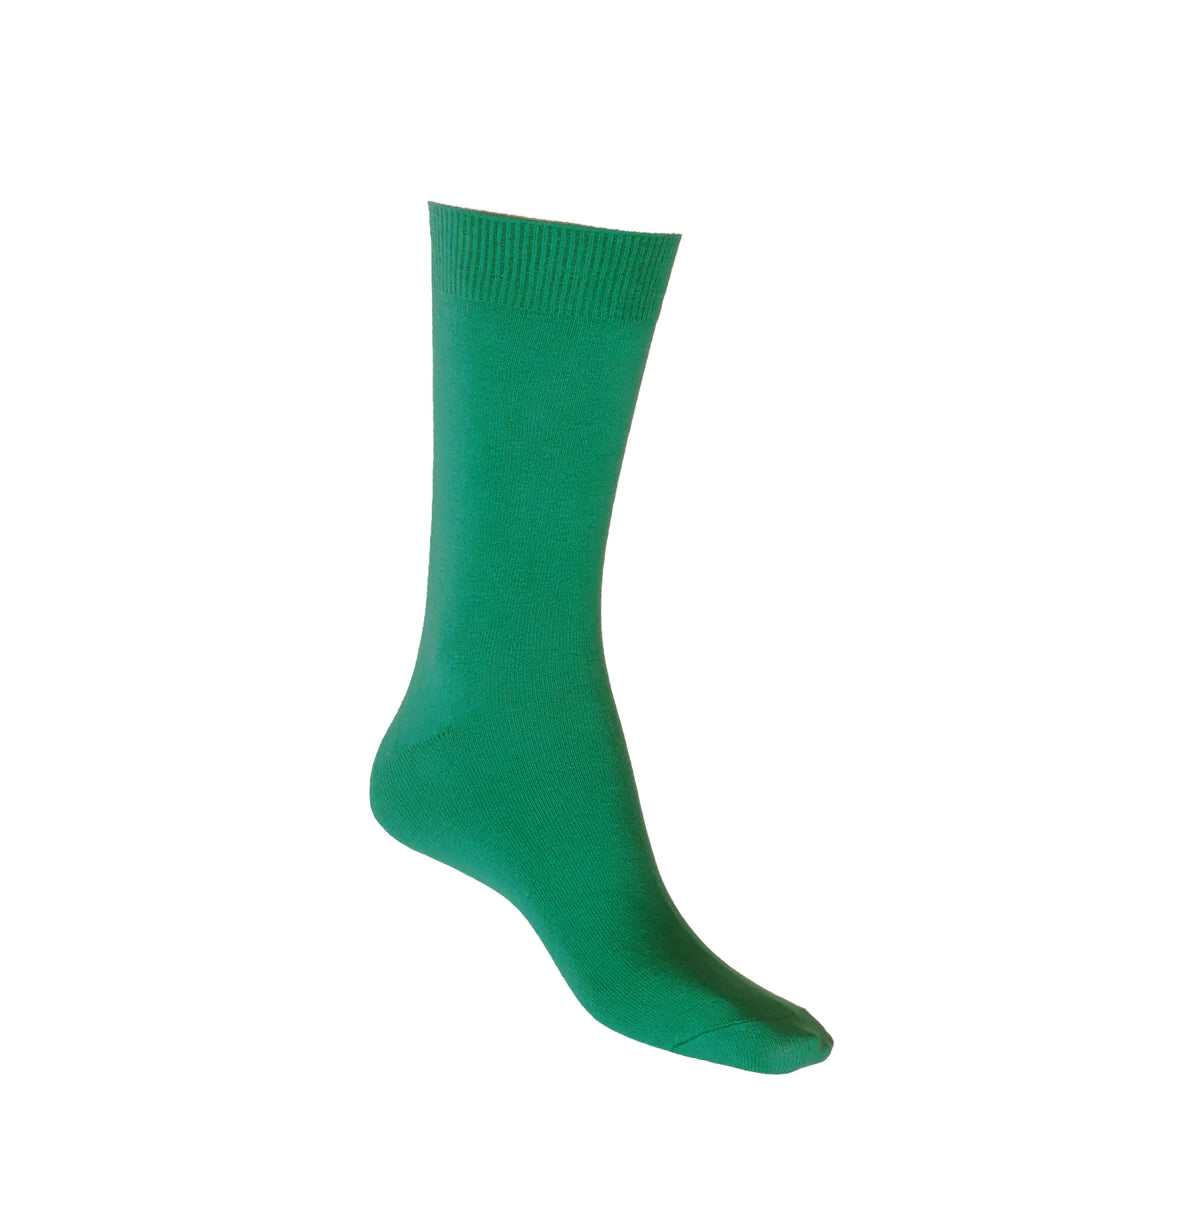 Cotton Crew Sock in Emerald - Aussie Made